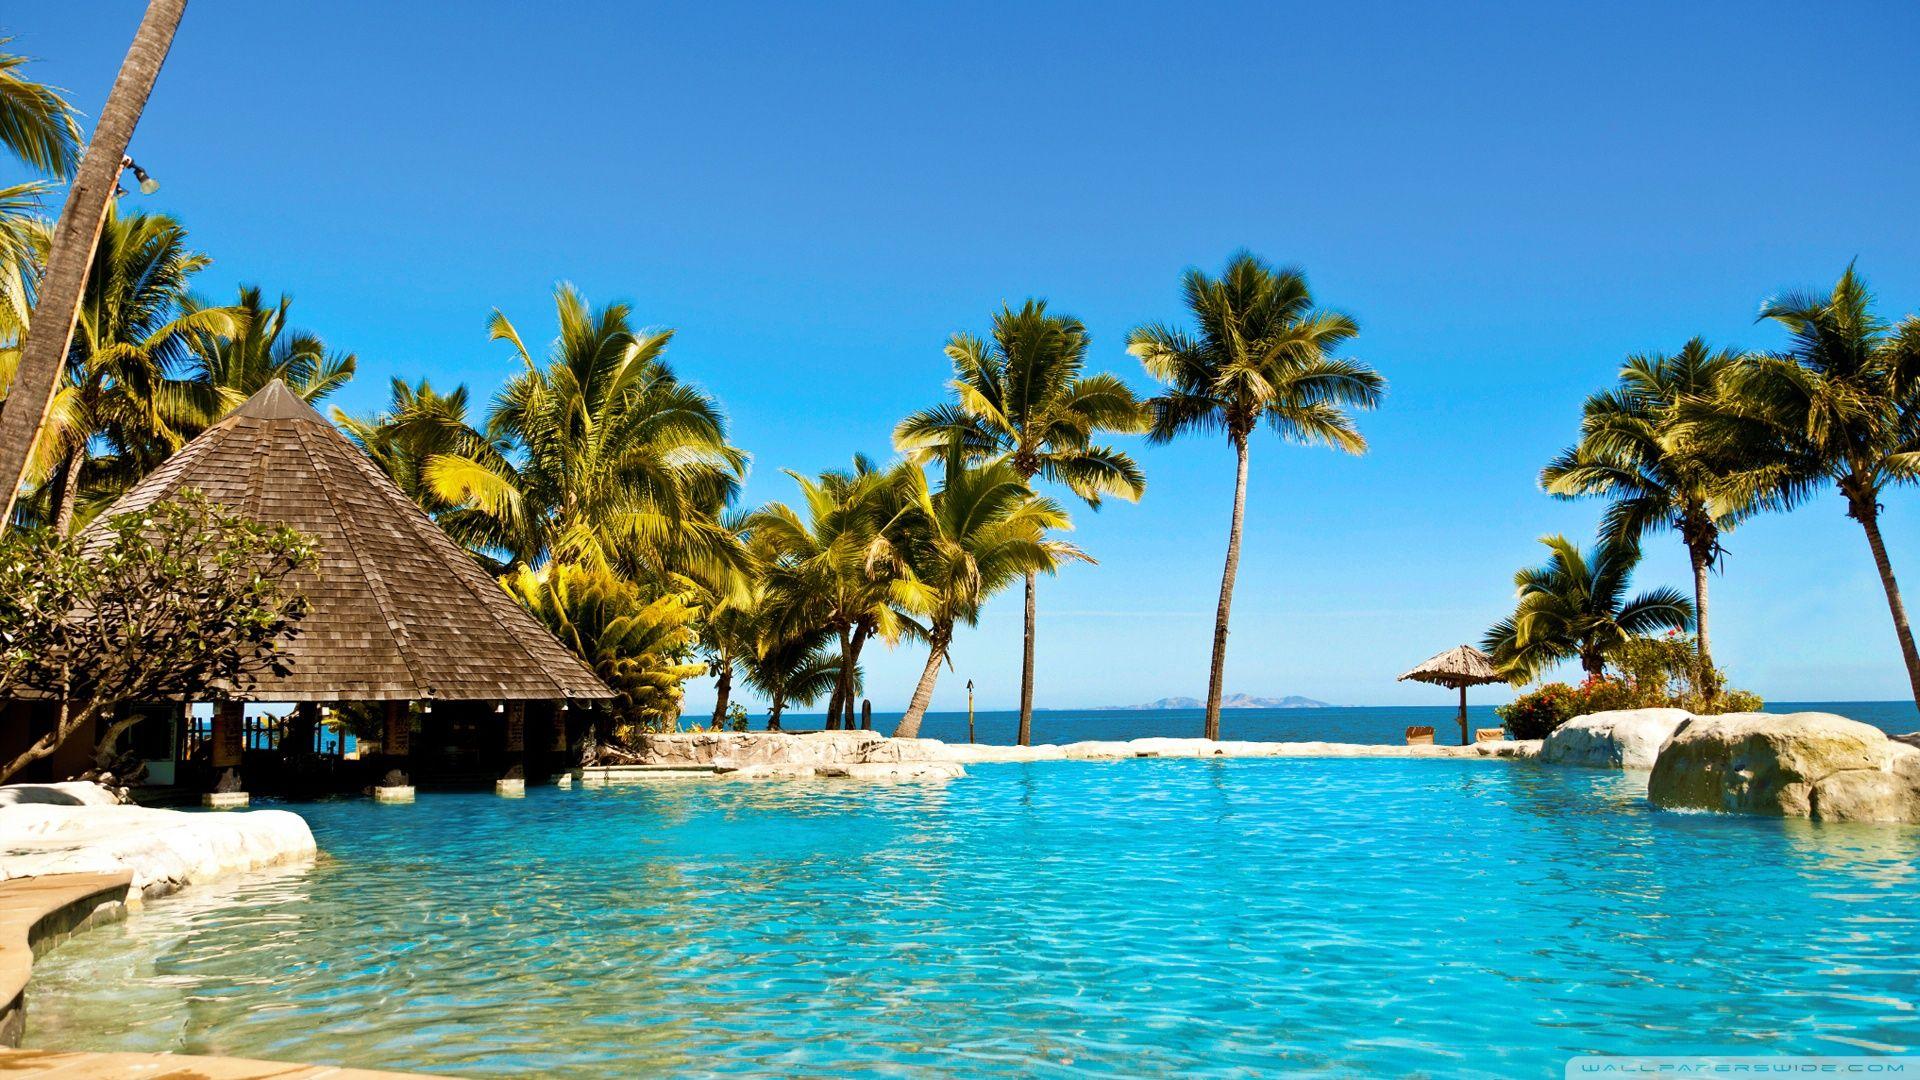 Fiji Resort ❤ 4K HD Desktop Wallpaper for 4K Ultra HD TV • Tablet